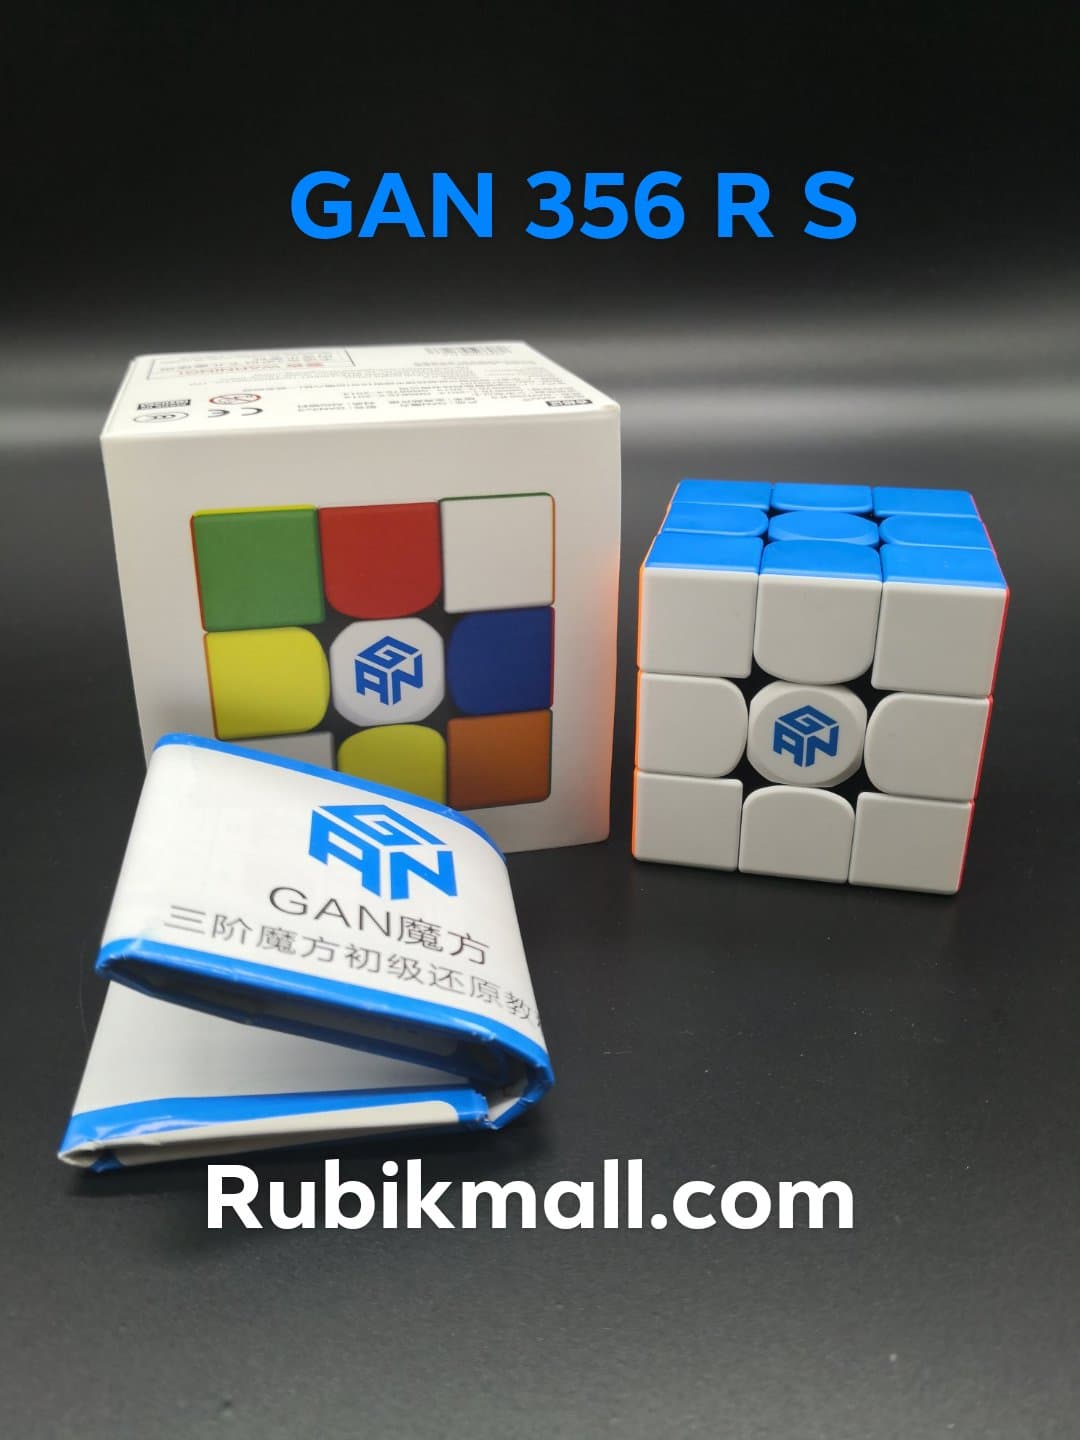 รูบิค3x3 GAN 356 R S NEW รุ่นนี้เป็นรุ่นพัฒนาขึ้น จาก GAN356 R ที่เป็นตัวรุ่นยอดนิยม น้ำหนักตัวรูบิคอยู่ที่ 72 กรัม Stickerless เบาและลื่นมากมาก คุณภาพตัวรูบิคดีมากมาก rubik.รูบิค.รูบิก.ลูกบิก.ของเล่นเสริมพัฒนาการ Rubikmall จำหน่ายของแท้เท่านั้น